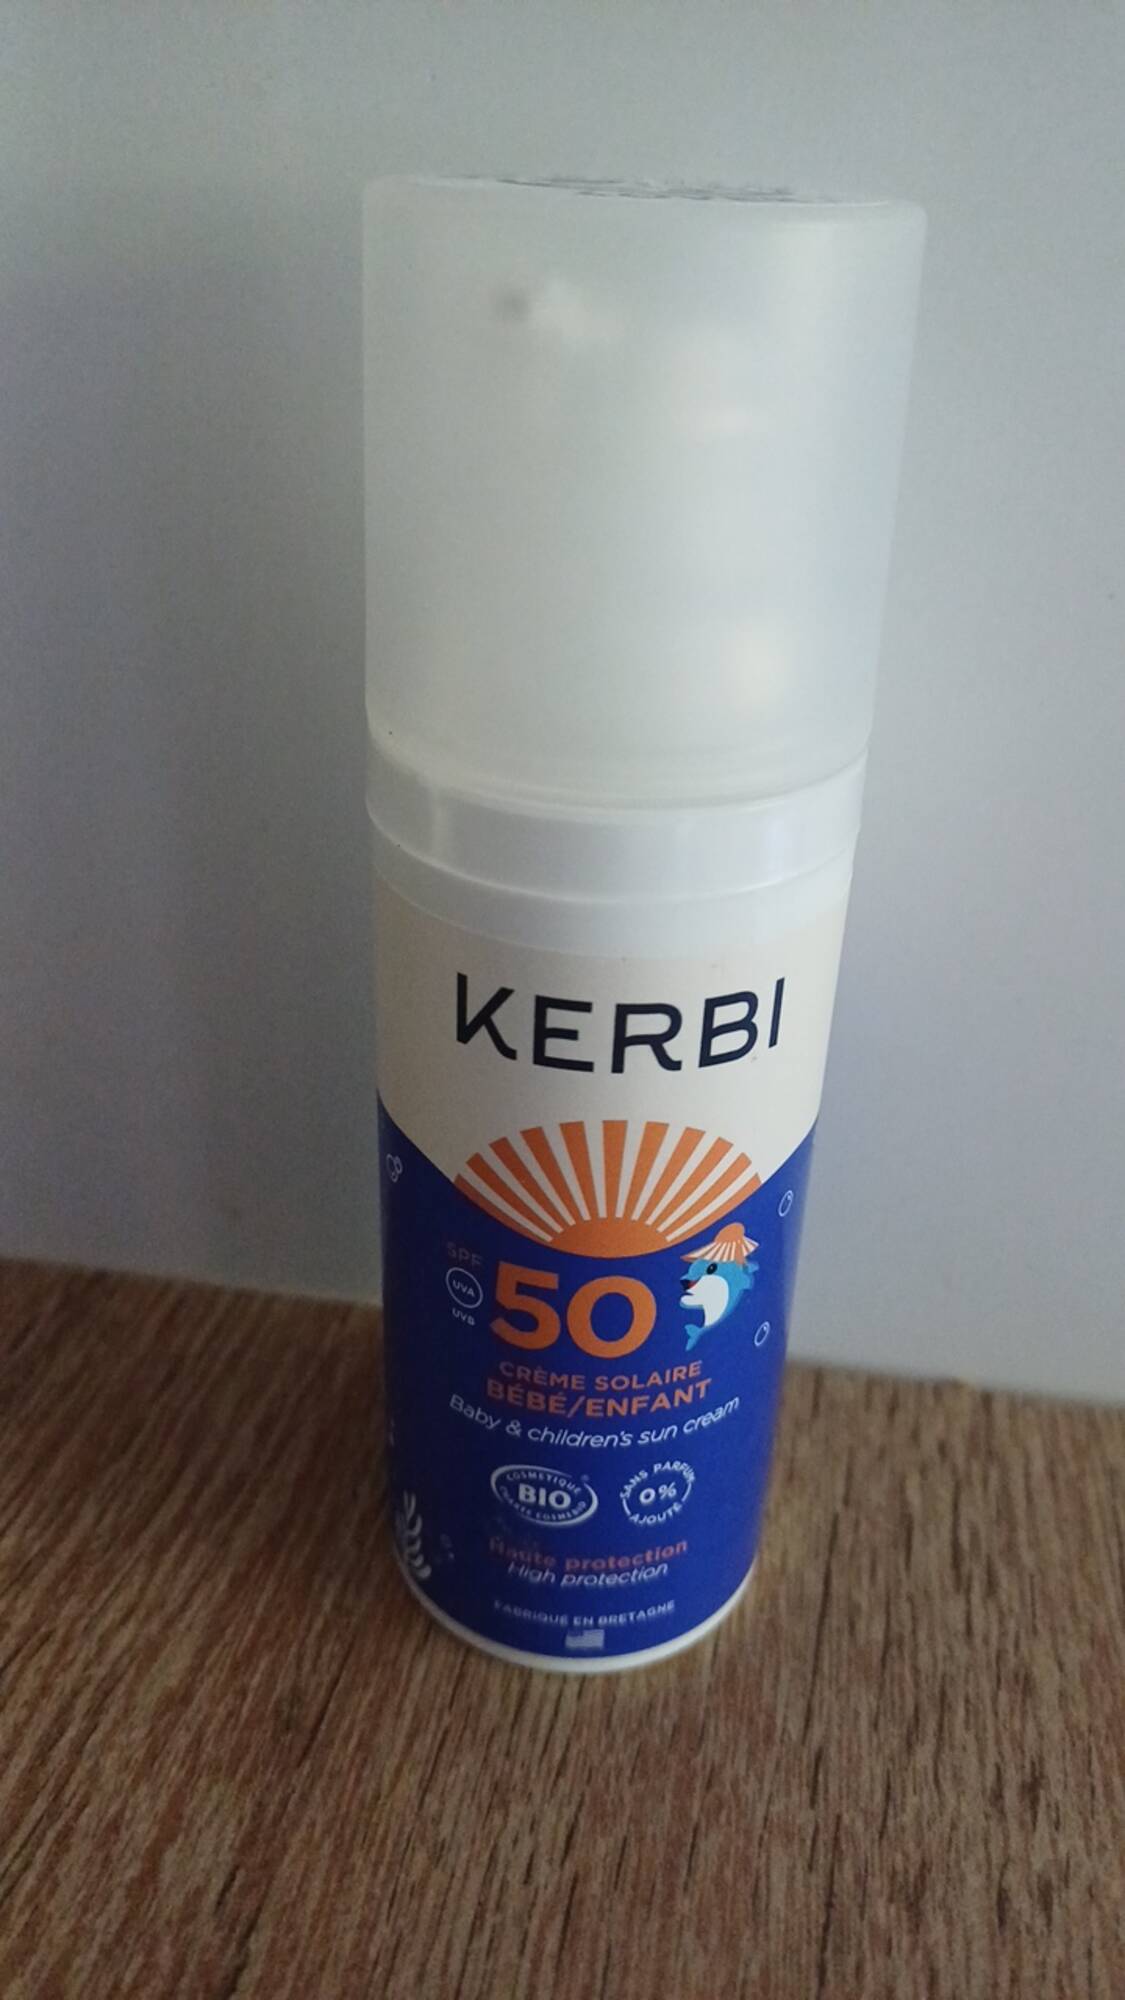 KERBI - Crème solaire bébé et enfant SPF 50